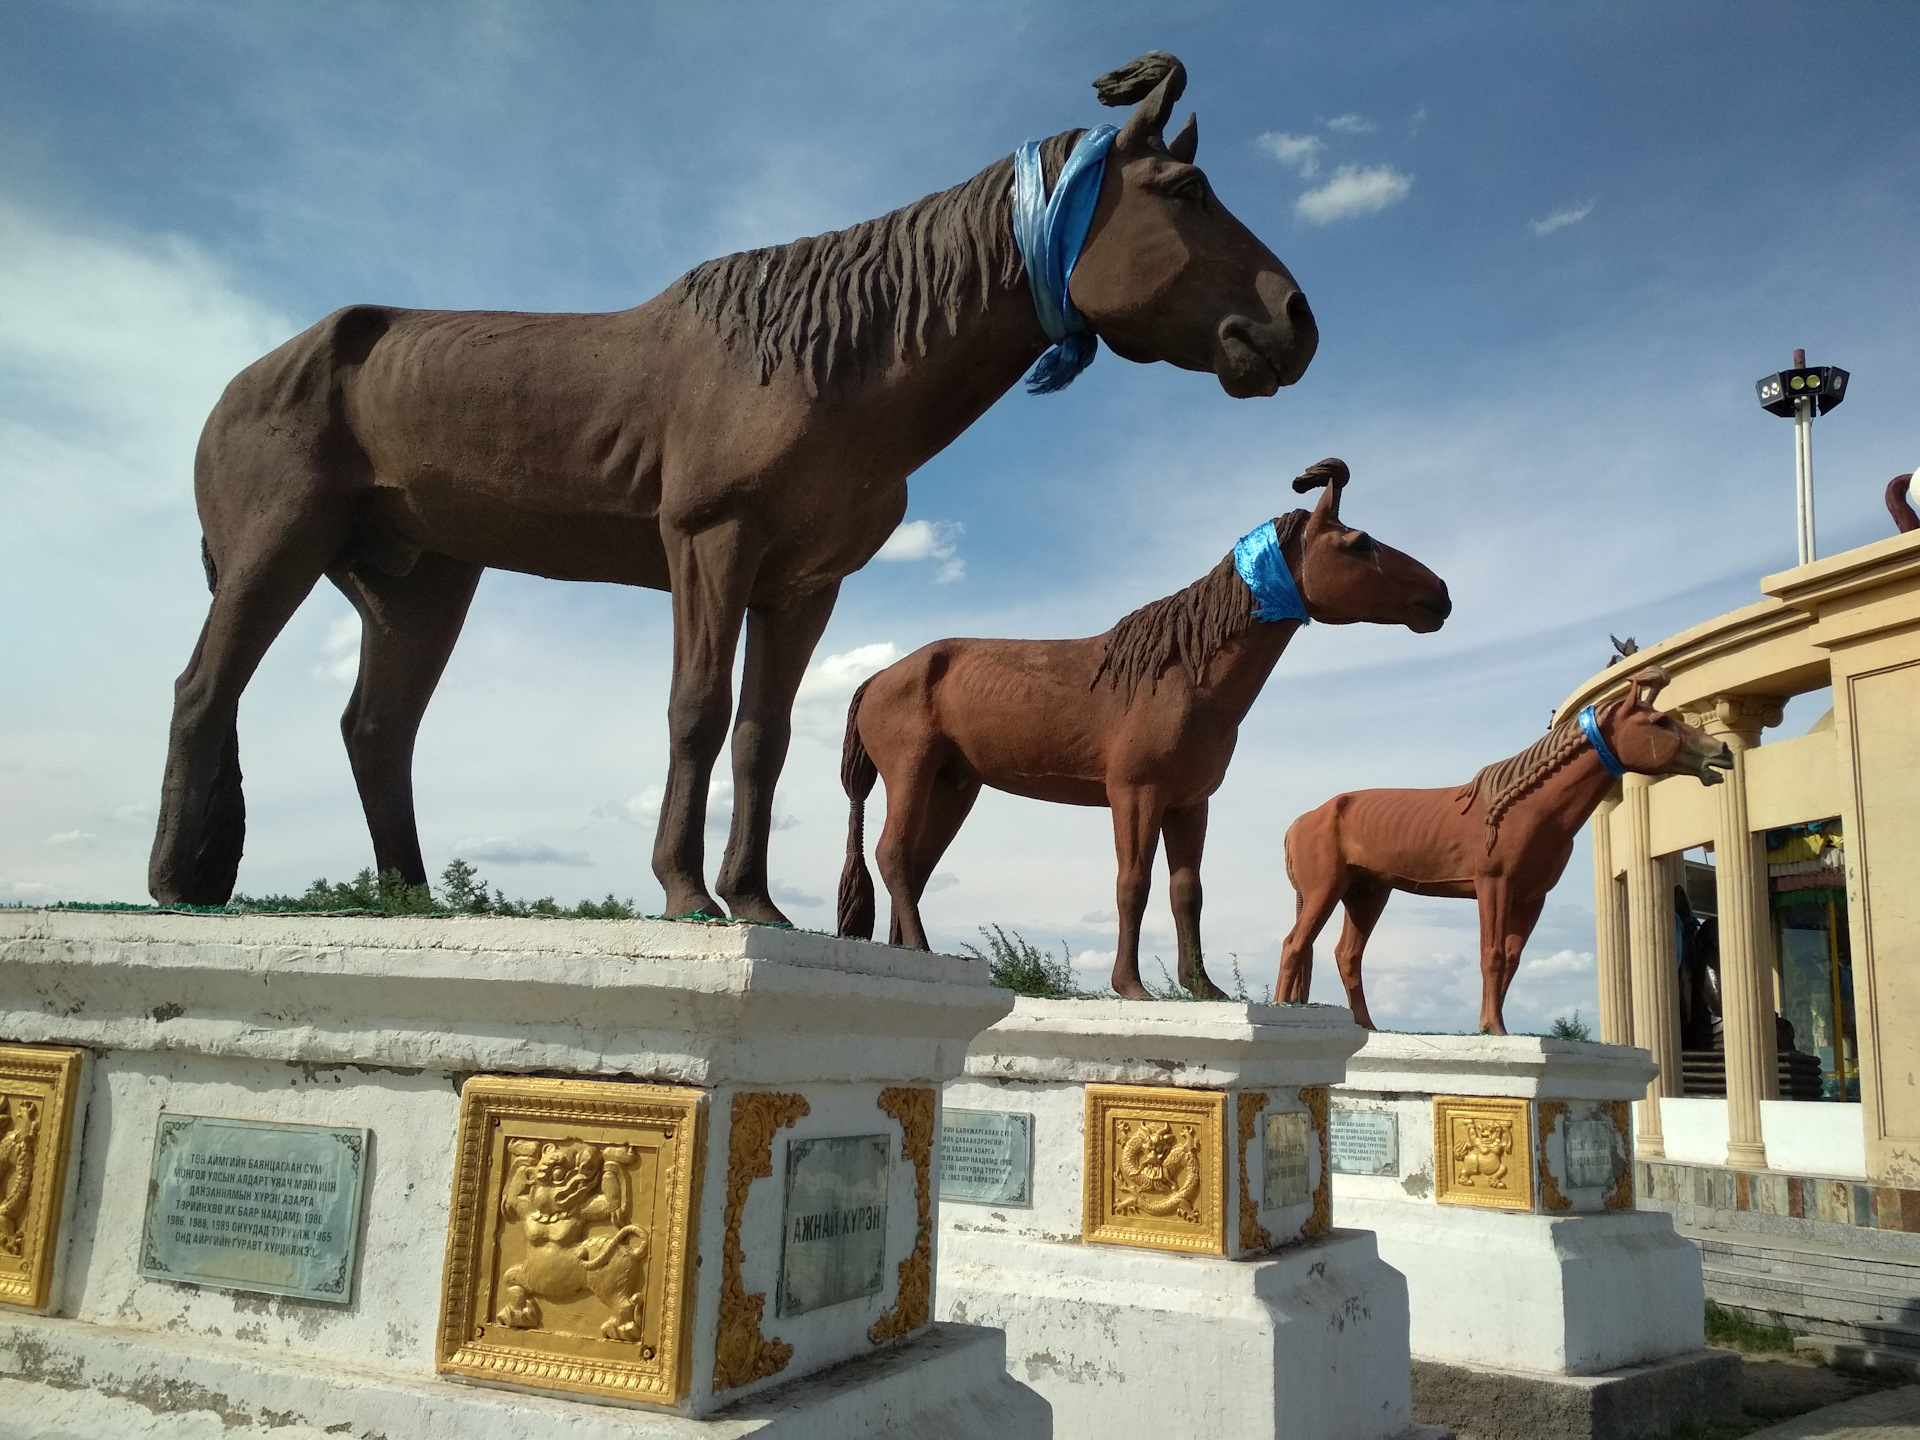 Арвайхээр. Арвайхээр Монголия город. Кладбище лошадей в Монголии. Арвайхээр конь. Монголия Арвайхээр в ч 52757.